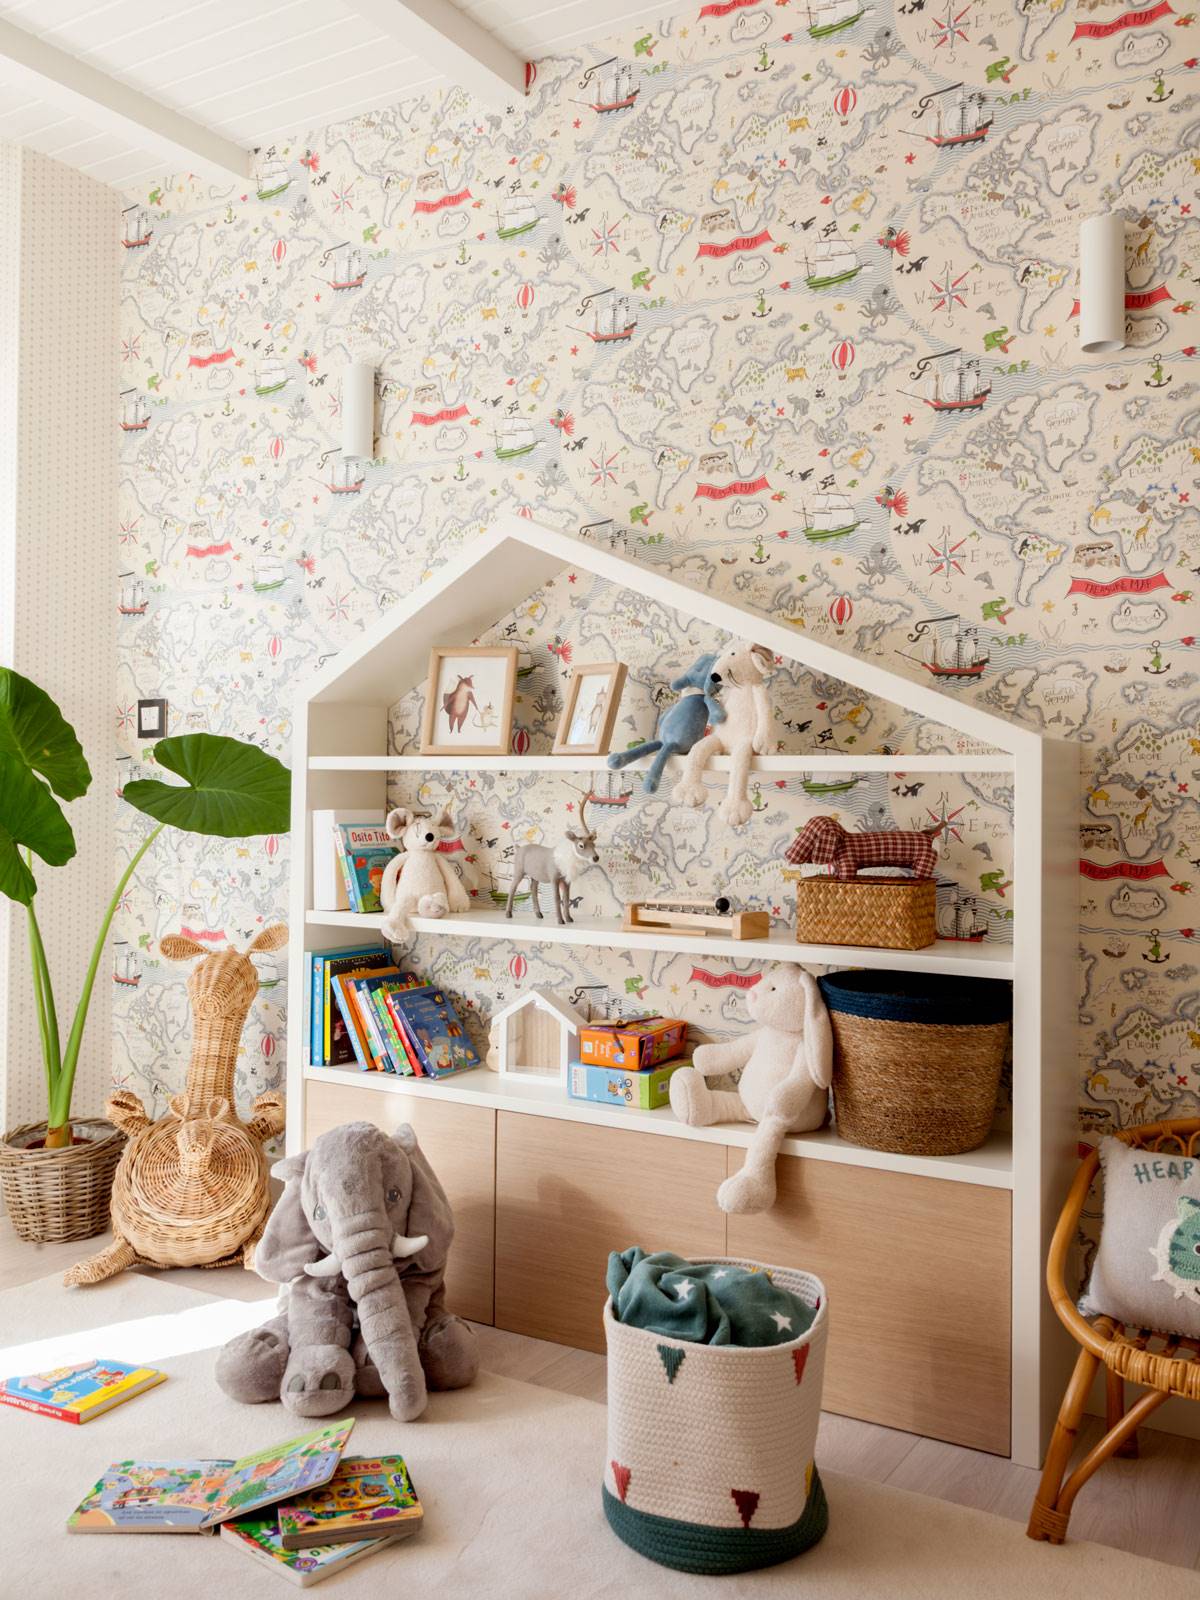 Zona de juegos con papel pintado, mueble con forma de casa, juguetes y alfombra.